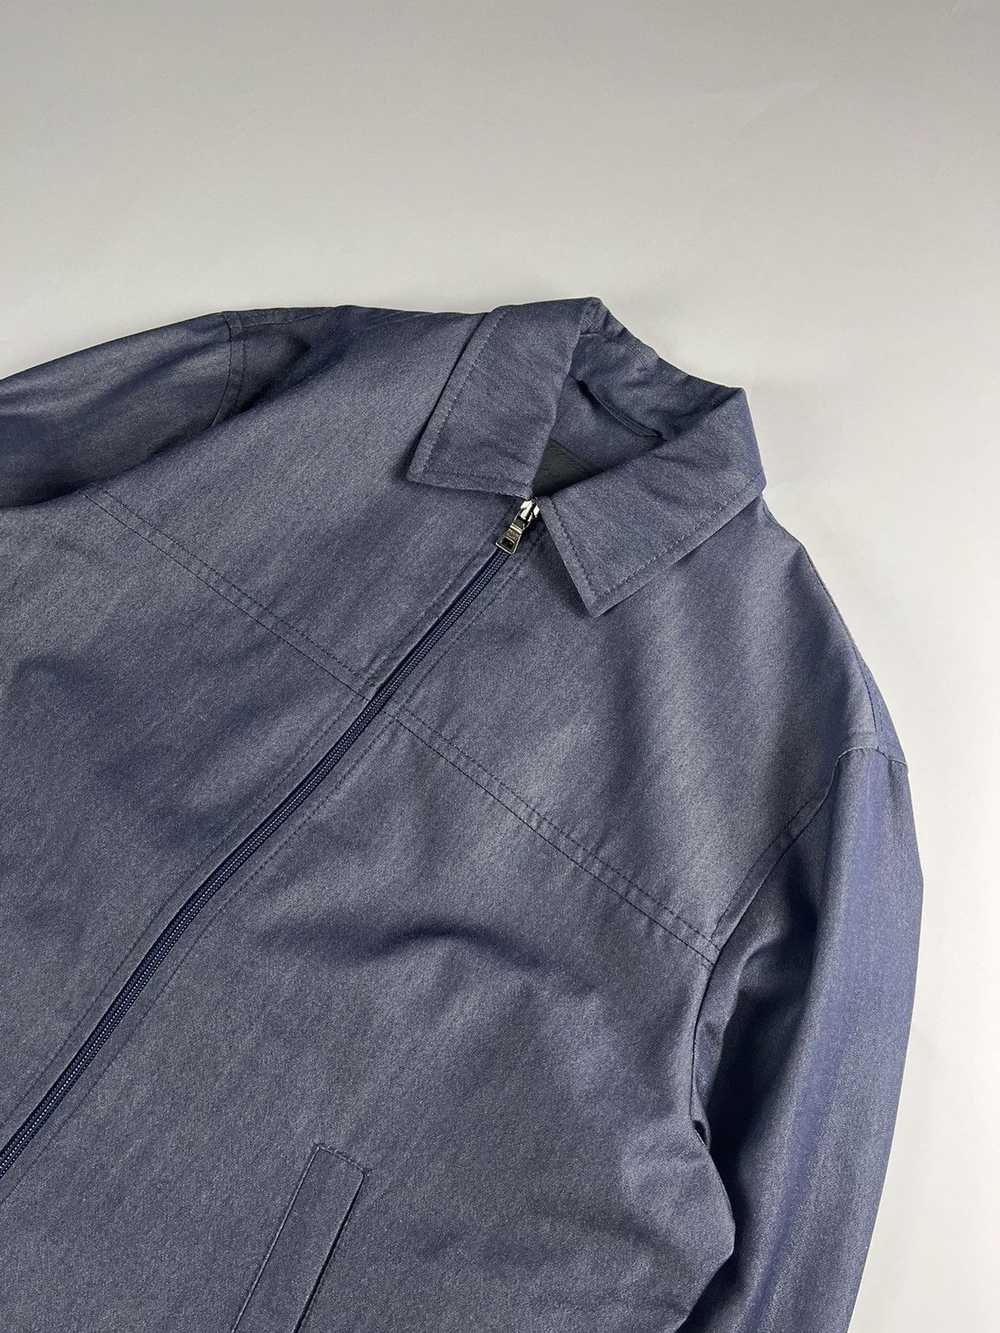 Prada Prada Double Zip Linen Jacket FW 1998 - image 5